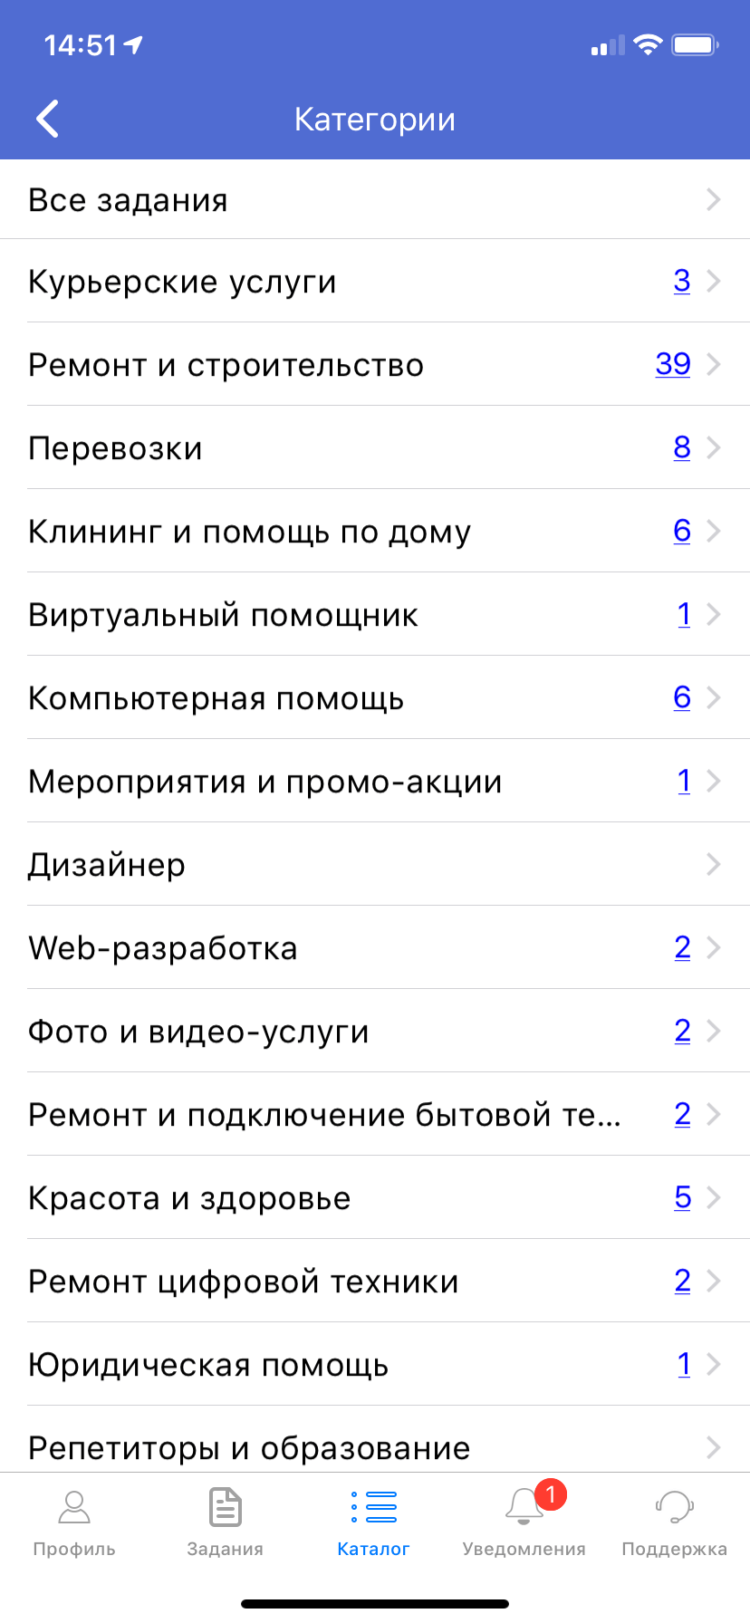 «Безруких.нет» — новый сервис от российских программистов. Как пользоваться. Фото.